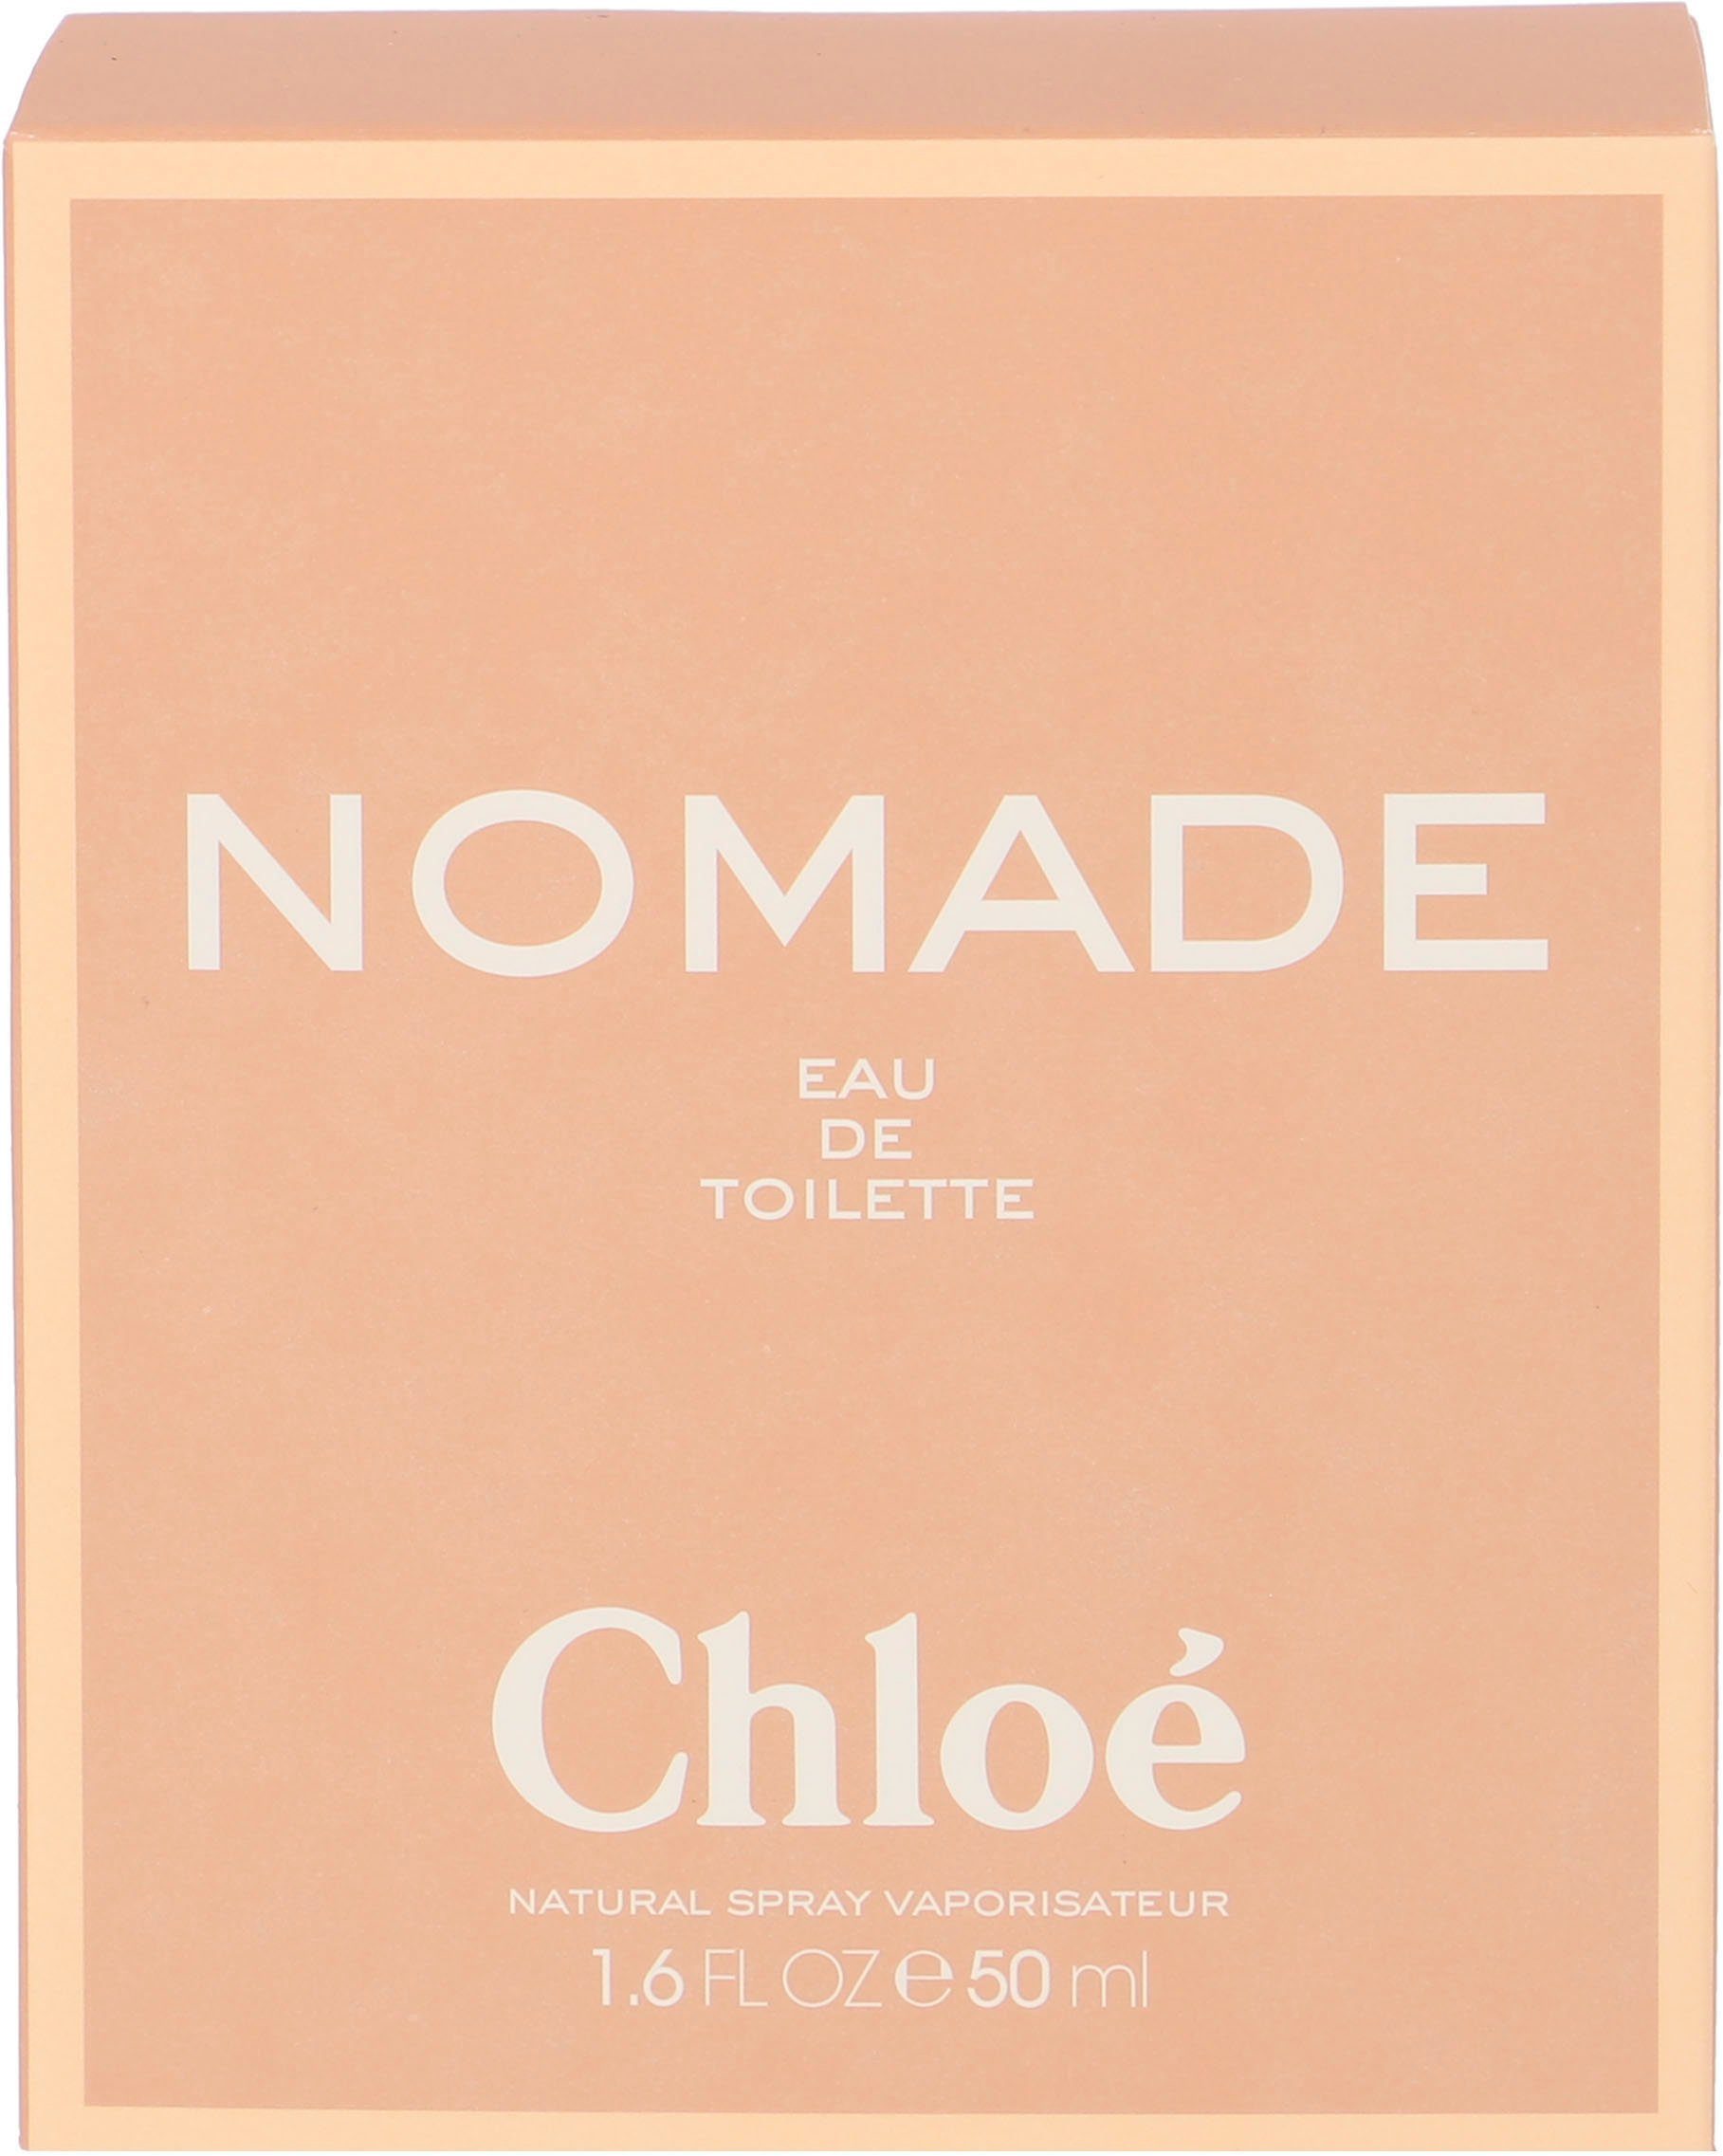 Chloé Eau Toilette de Nomade